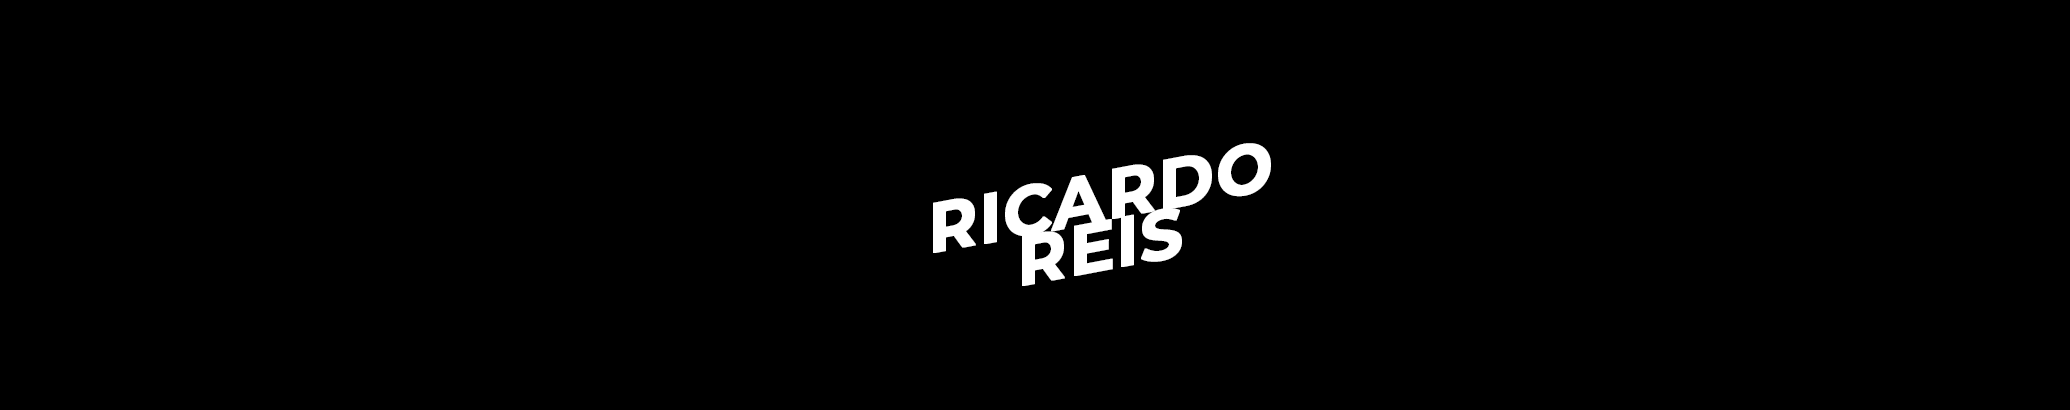 Ricardo Reis's profile banner